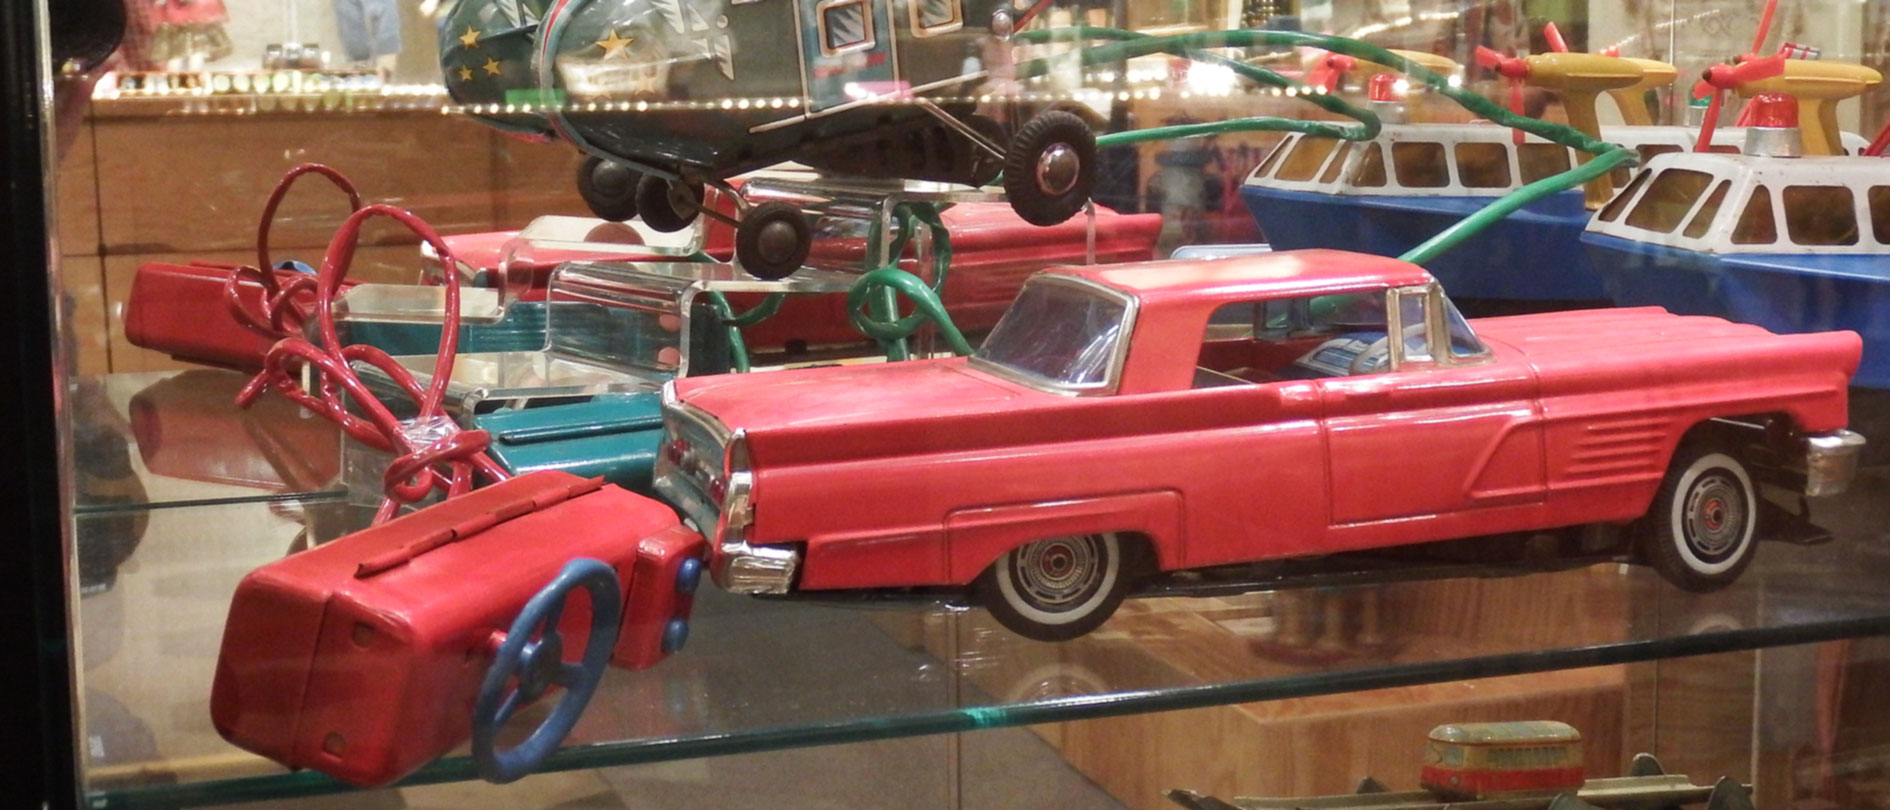 Toy Museum - Ferrières